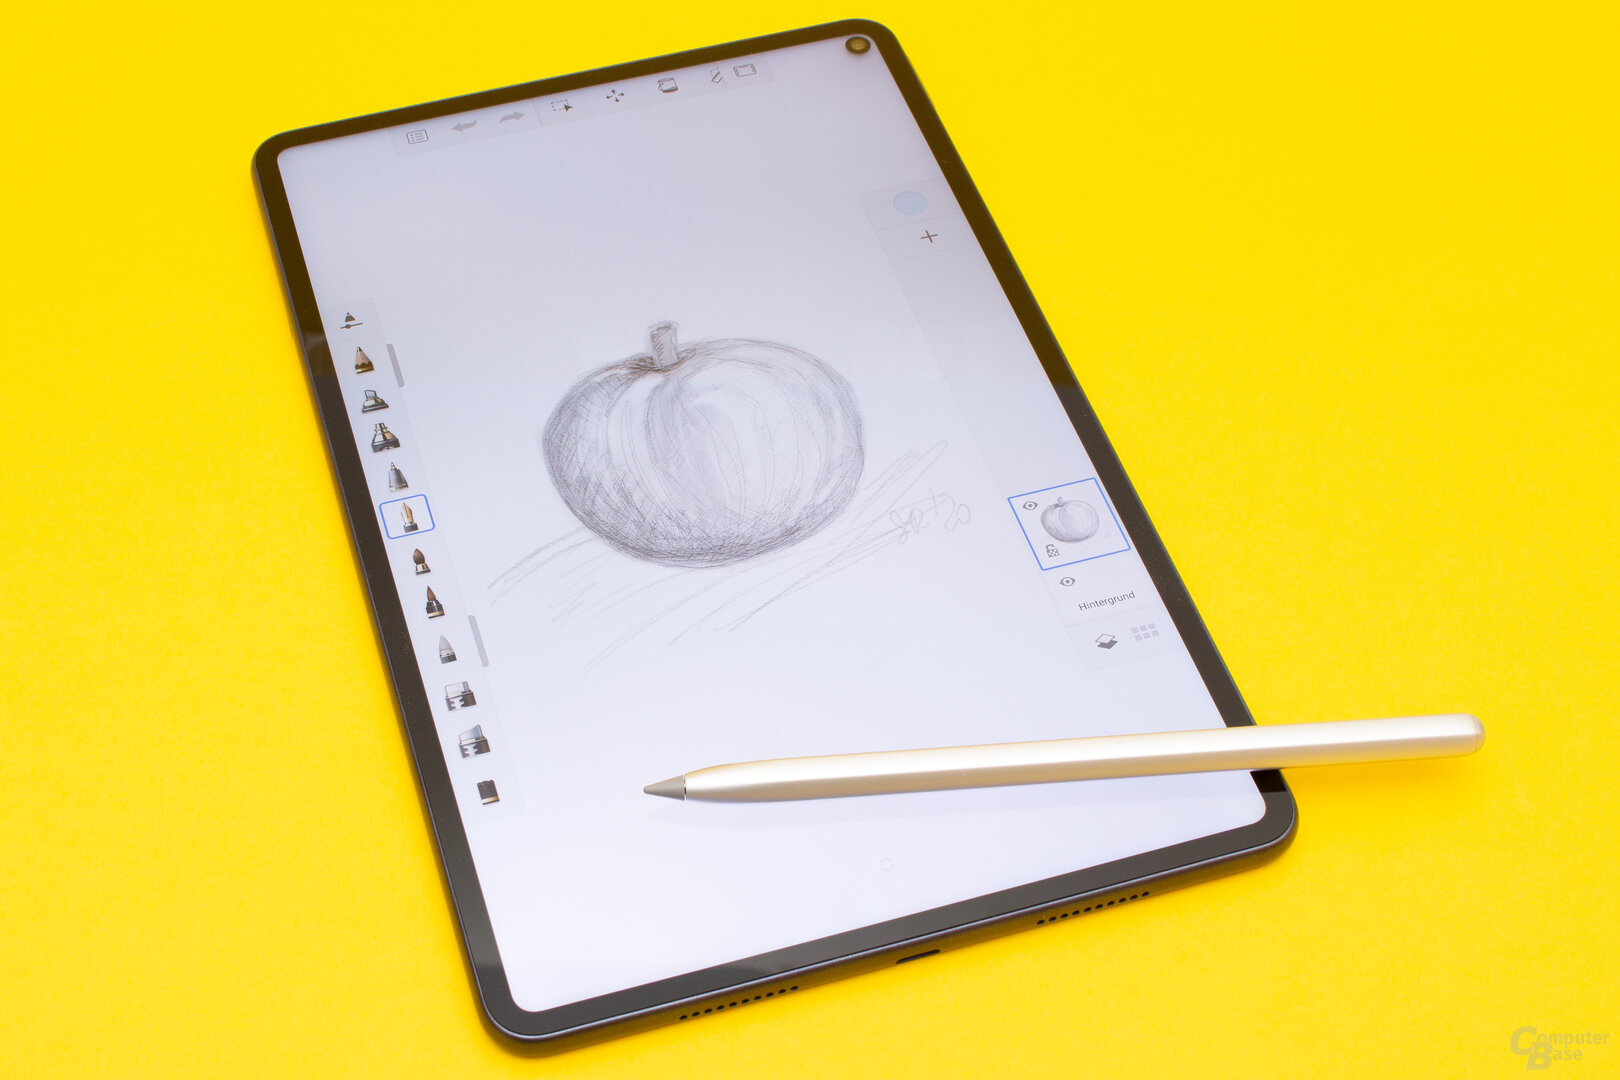 Das MatePad Pro eignet sich auch sehr gut zum Zeichnen